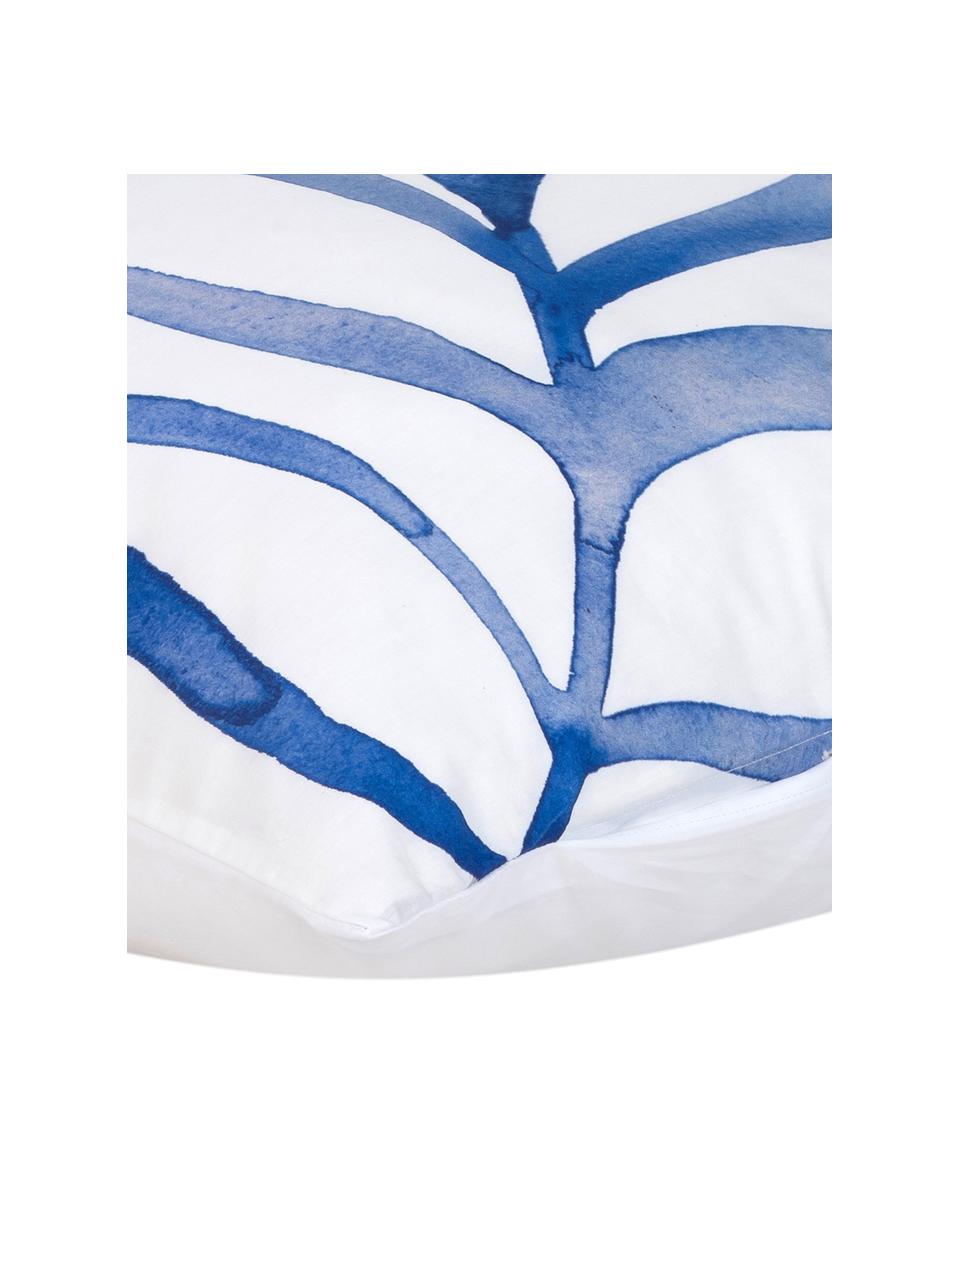 Baumwollperkal-Kissenbezug Francine mit Blatt-Muster, 50 x 70 cm, Webart: Perkal Fadendichte 180 TC, Weiss, Blau, B 50 x L 70 cm